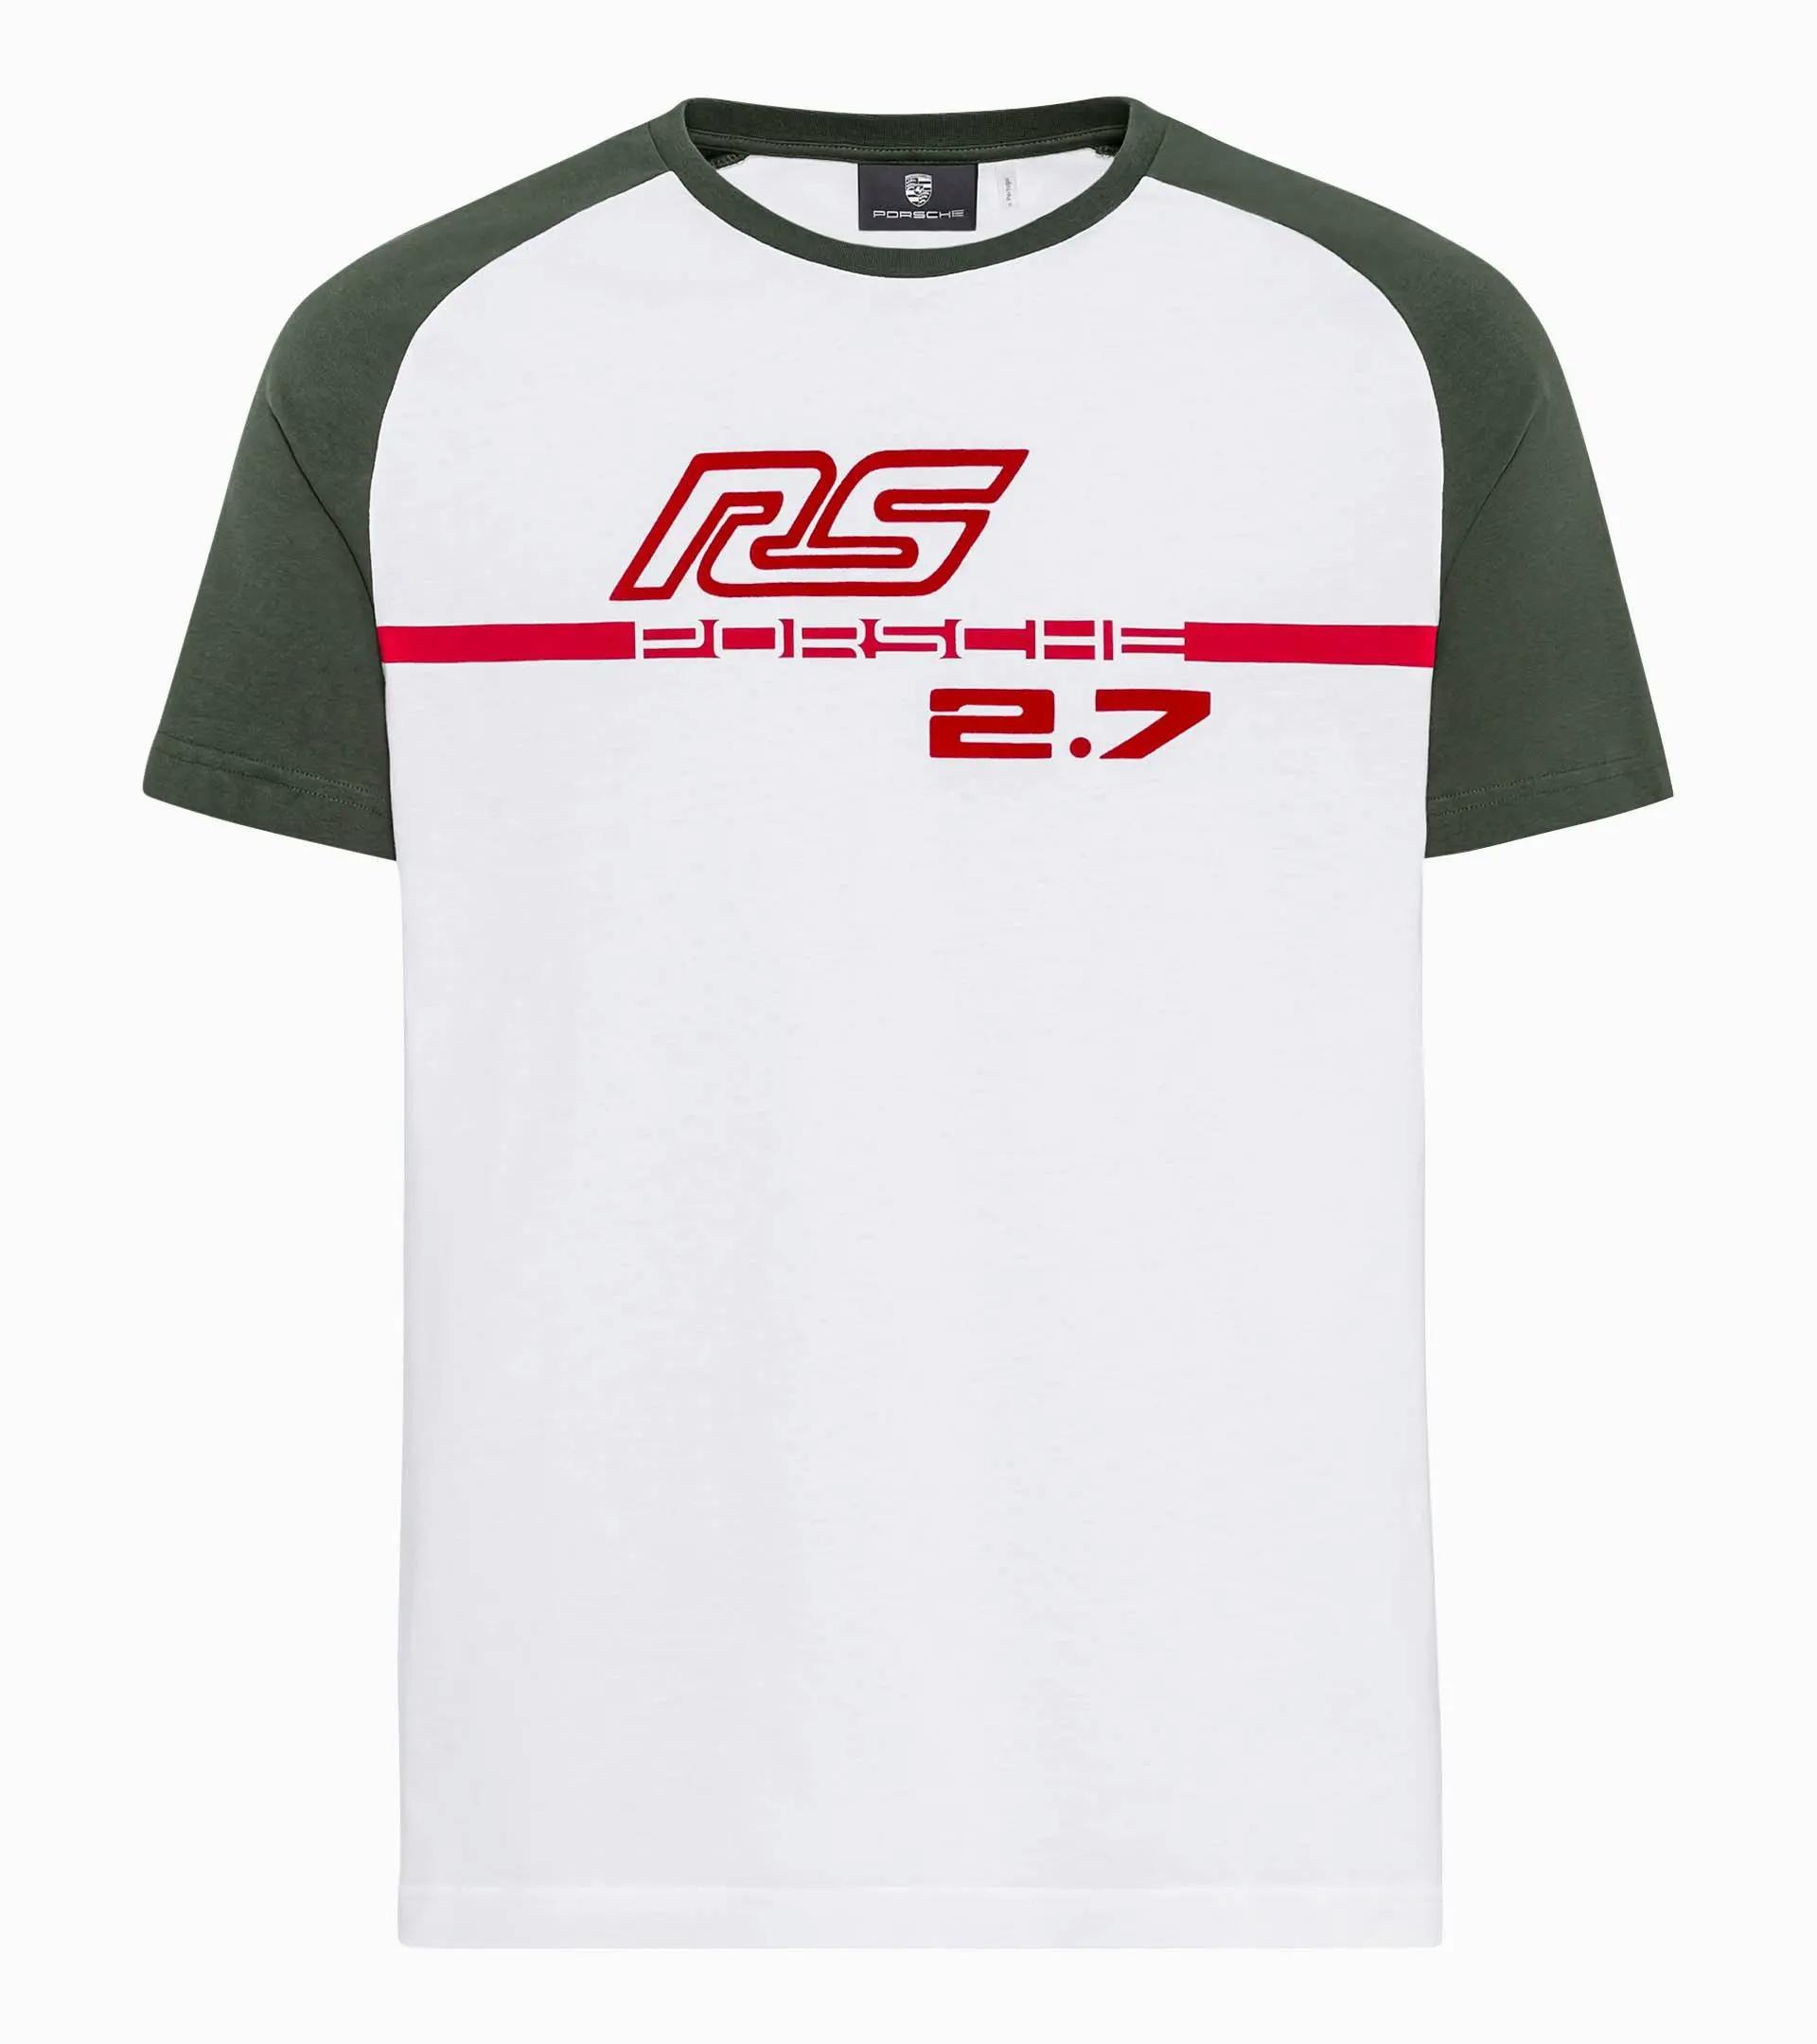 Men's T-shirt – RS 2.7 thumbnail 0